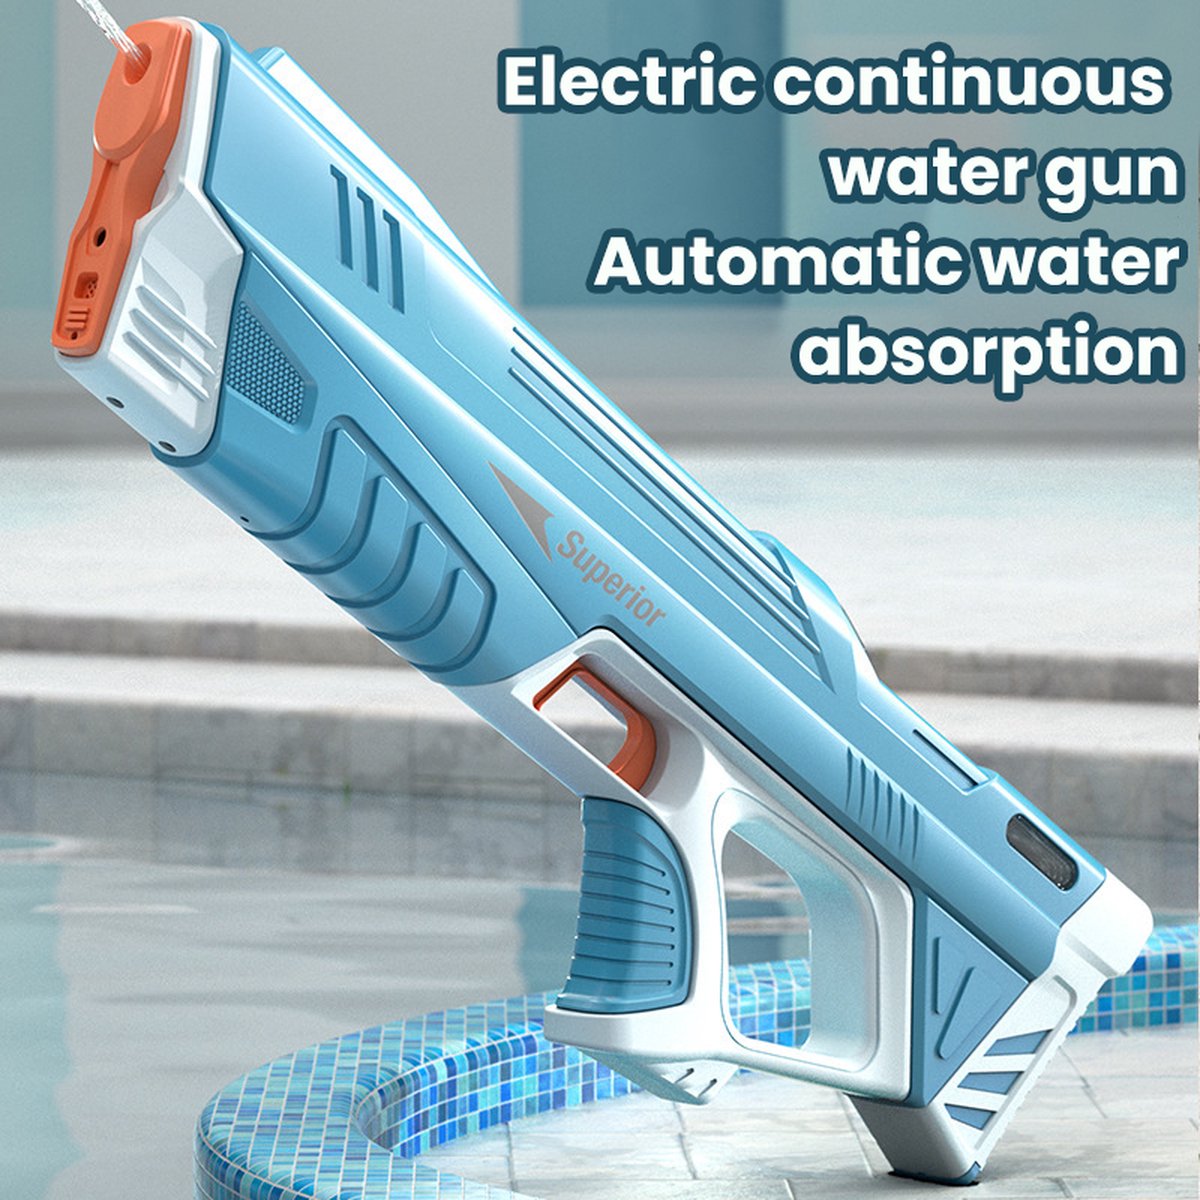 Oceans - Blauwe automatische waterpistool - Elektrische waterpistool - Vult automatisch - Hoge druk waterpistool - Watergun - Waterpistool - Volledig automatisch